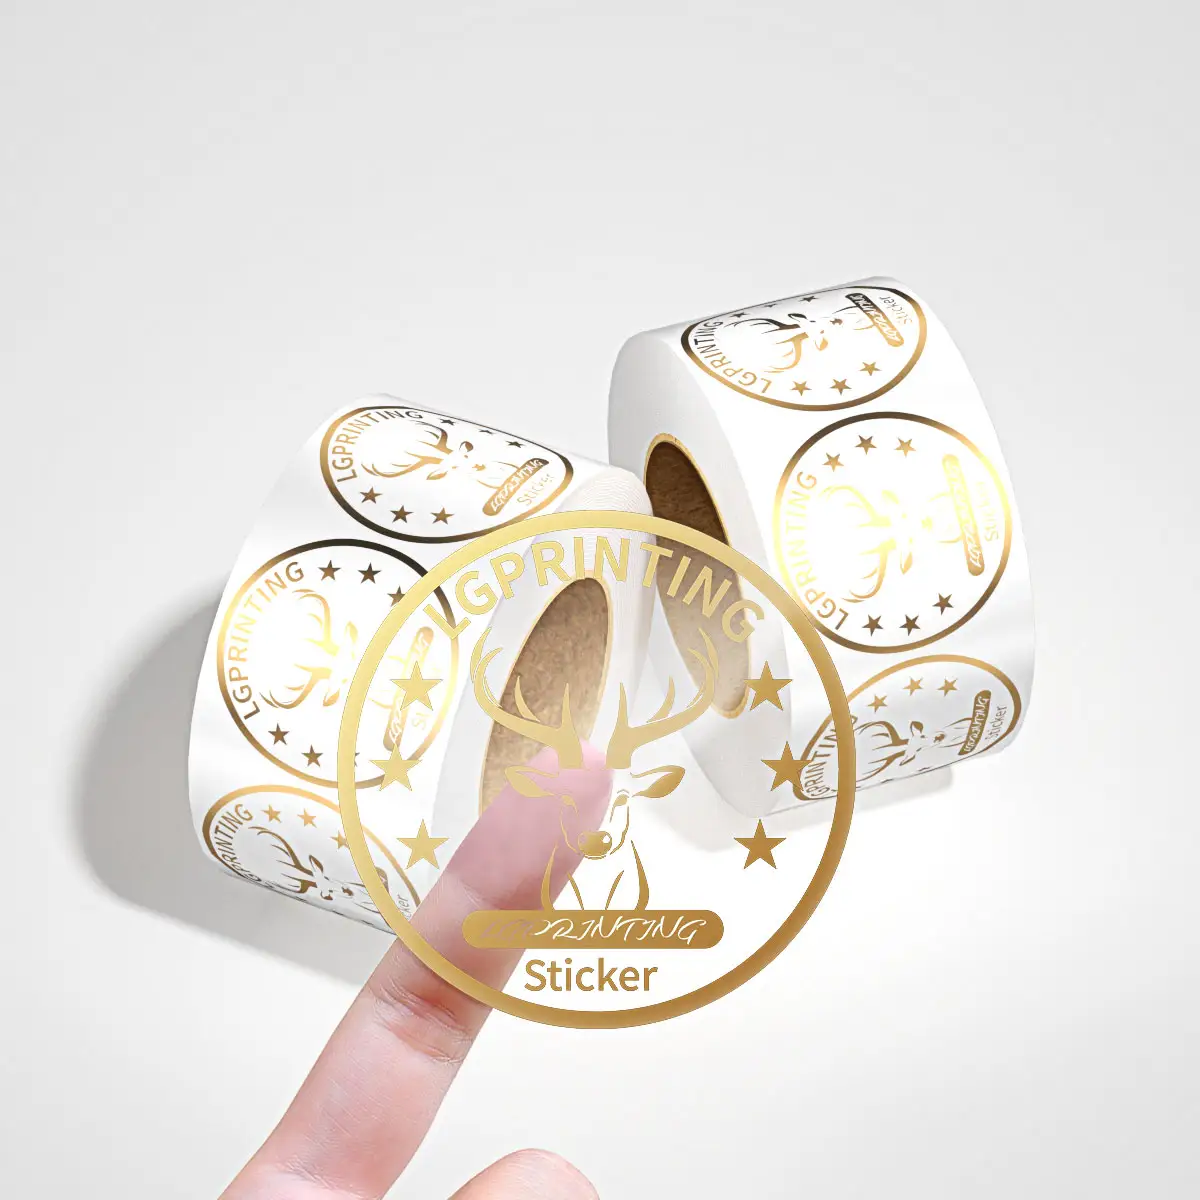 Minsda Personalizado Transparente Limpar Adesivo Impressão Folha De Ouro Adesivo Marca Logotipo Etiqueta Redonda Rolls Adesivo